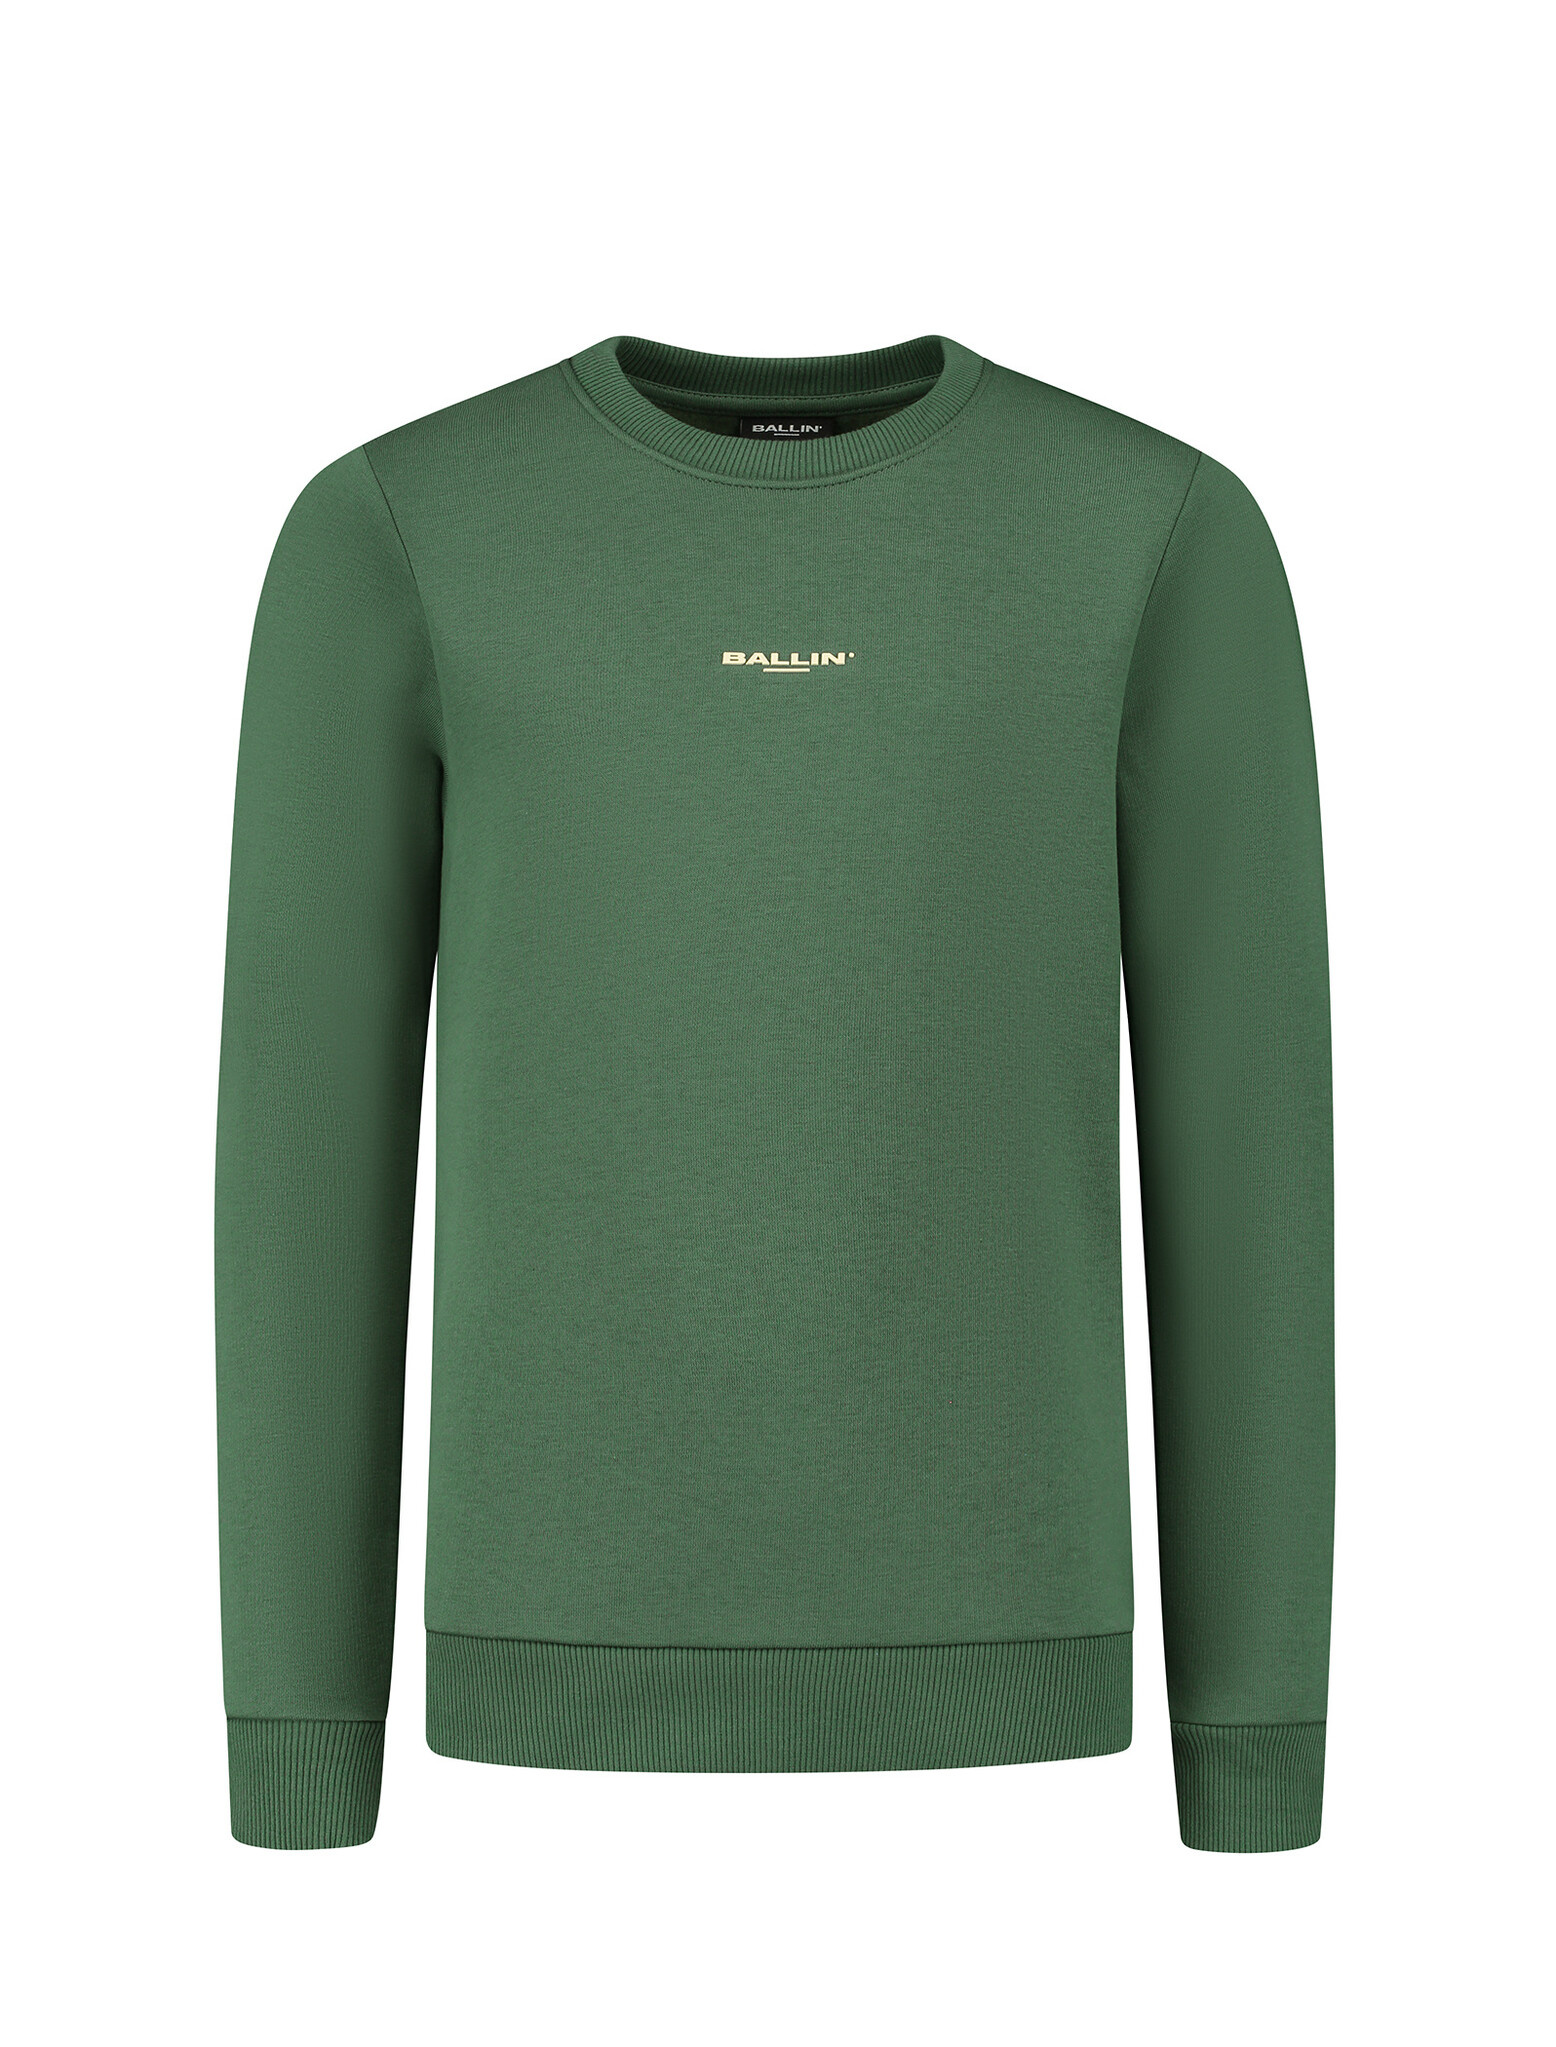 Ballin Jongens sweater met logo en artwork - Bos groen